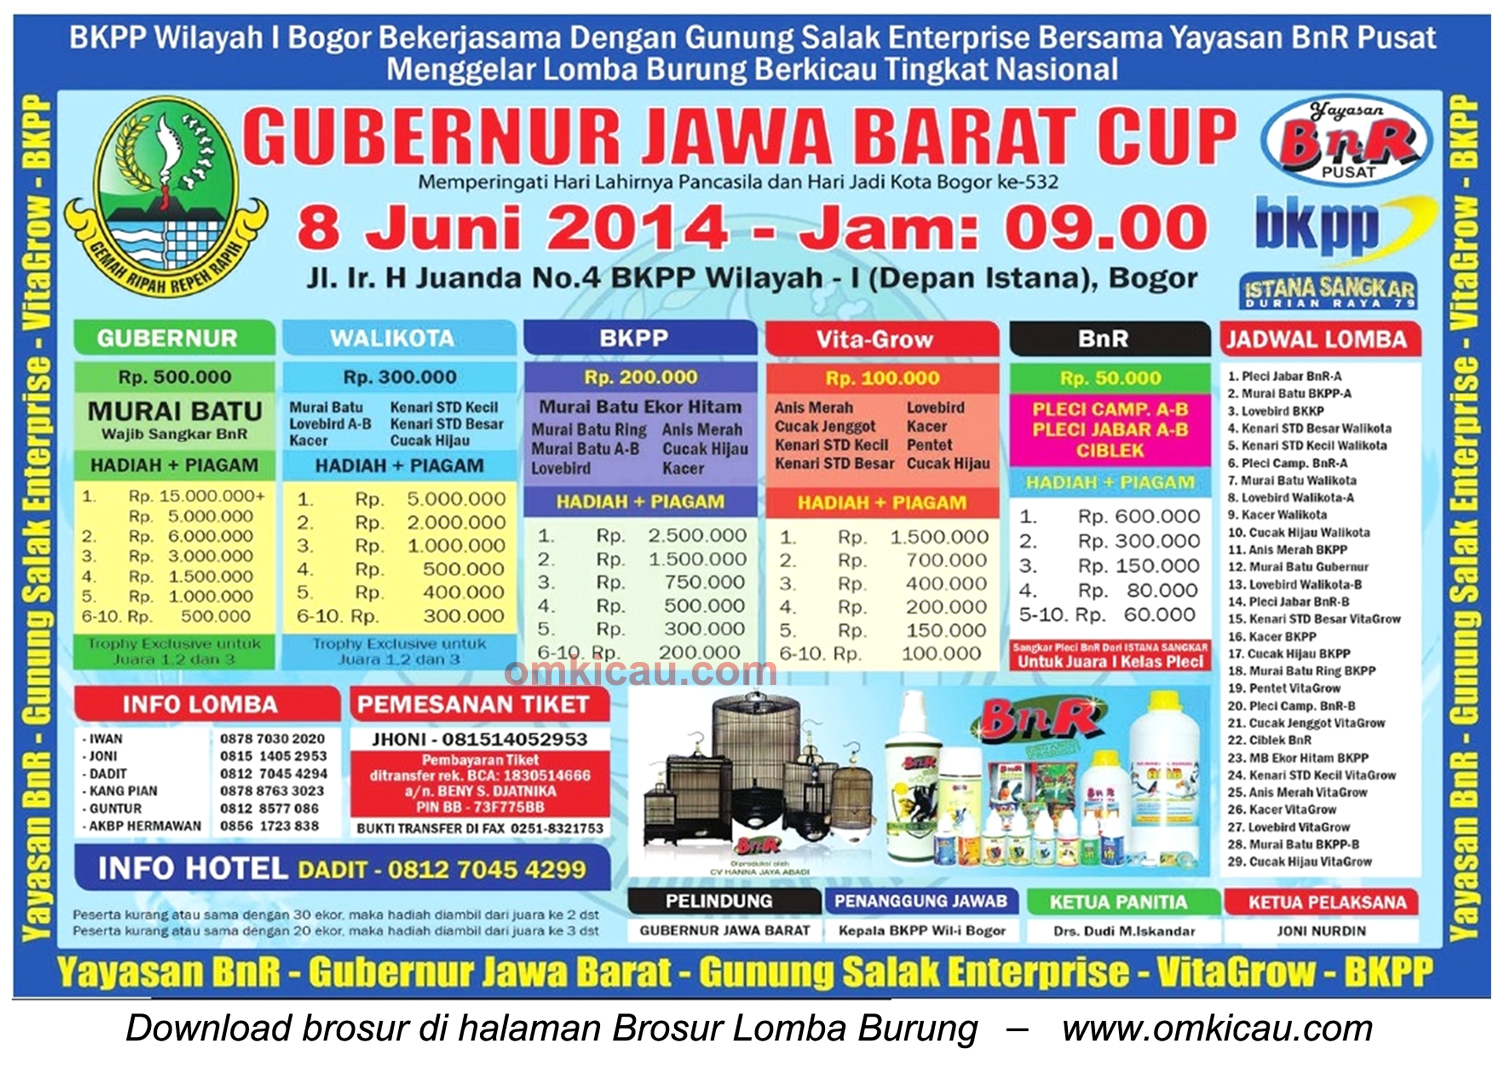 Brosur Lomba Burung Berkicau Gubernur Jawa Barat Cup, Bogor, 8 Juni 2014